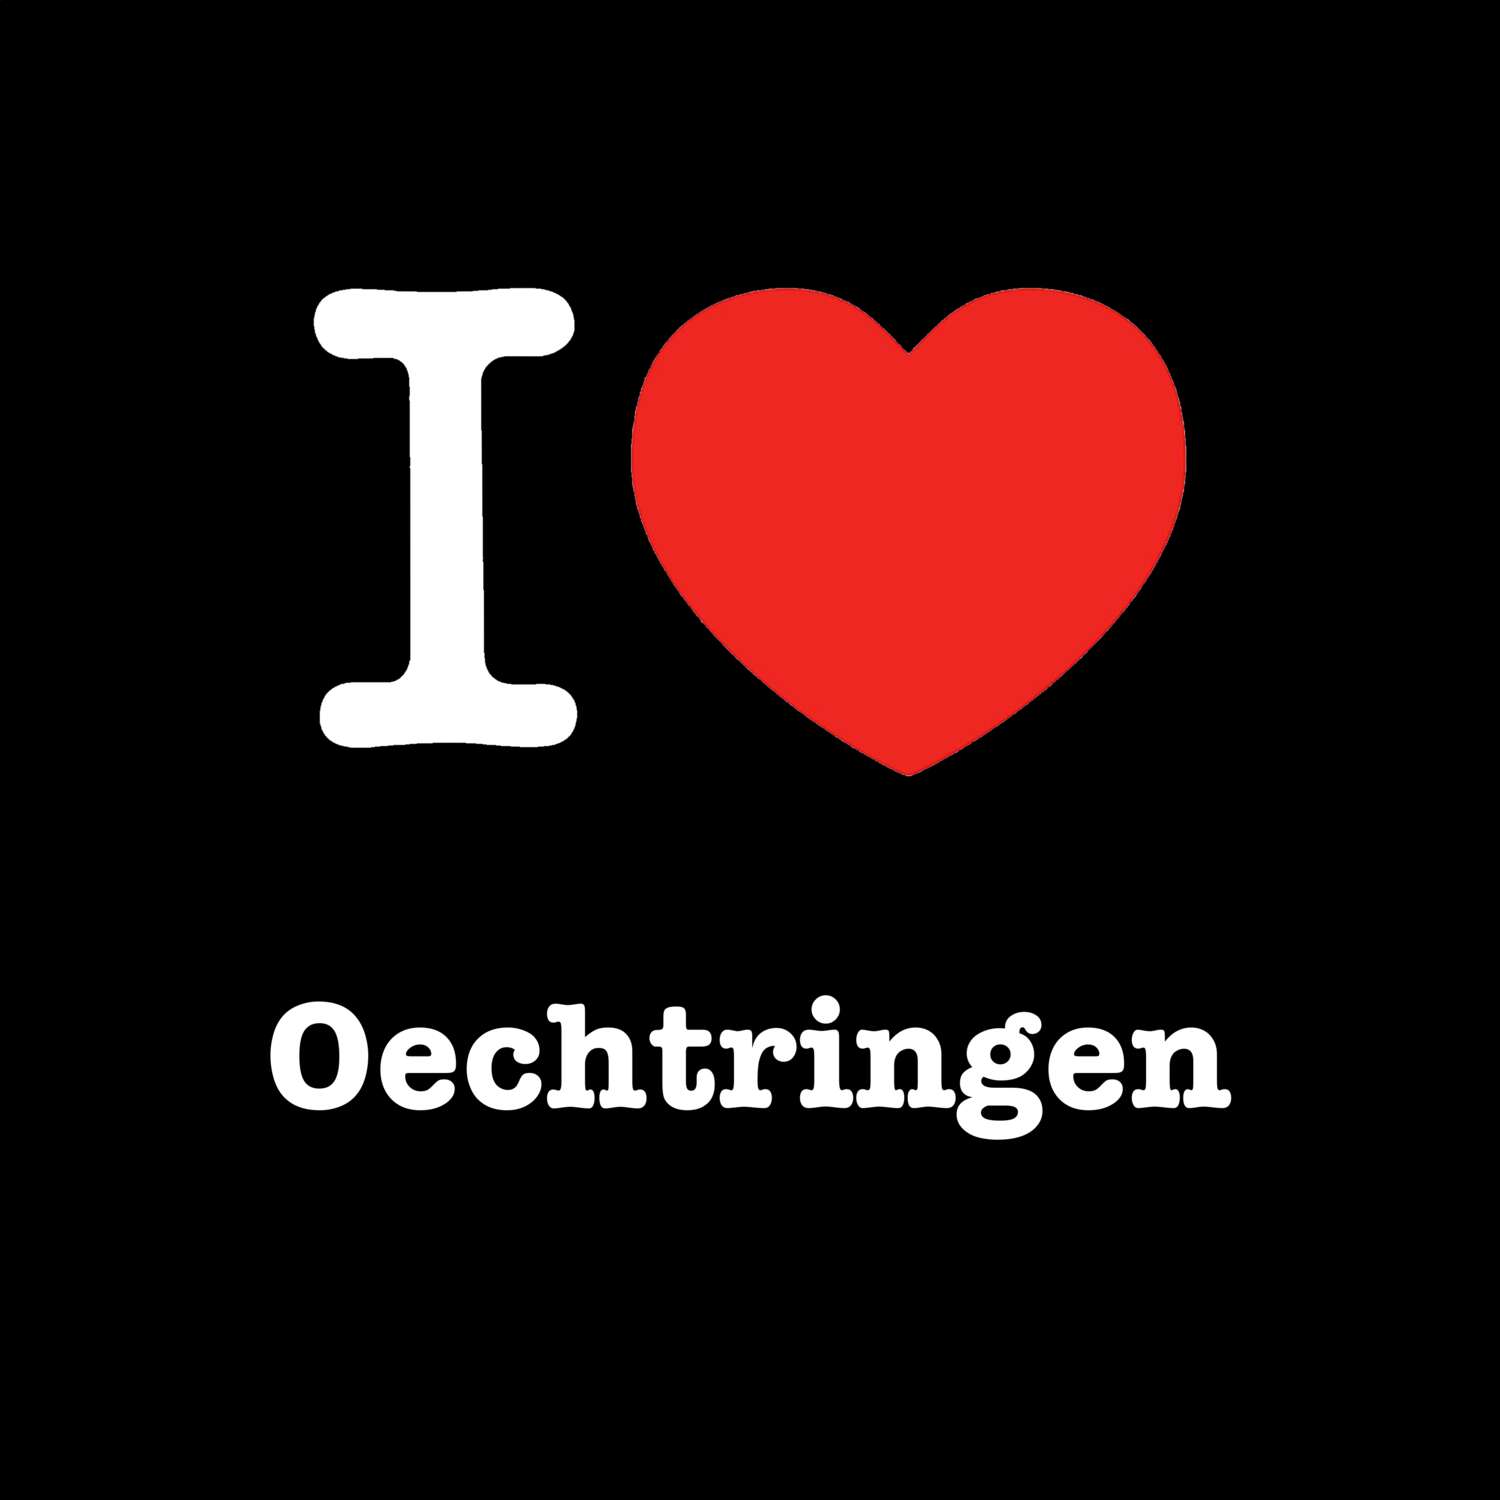 Oechtringen T-Shirt »I love«